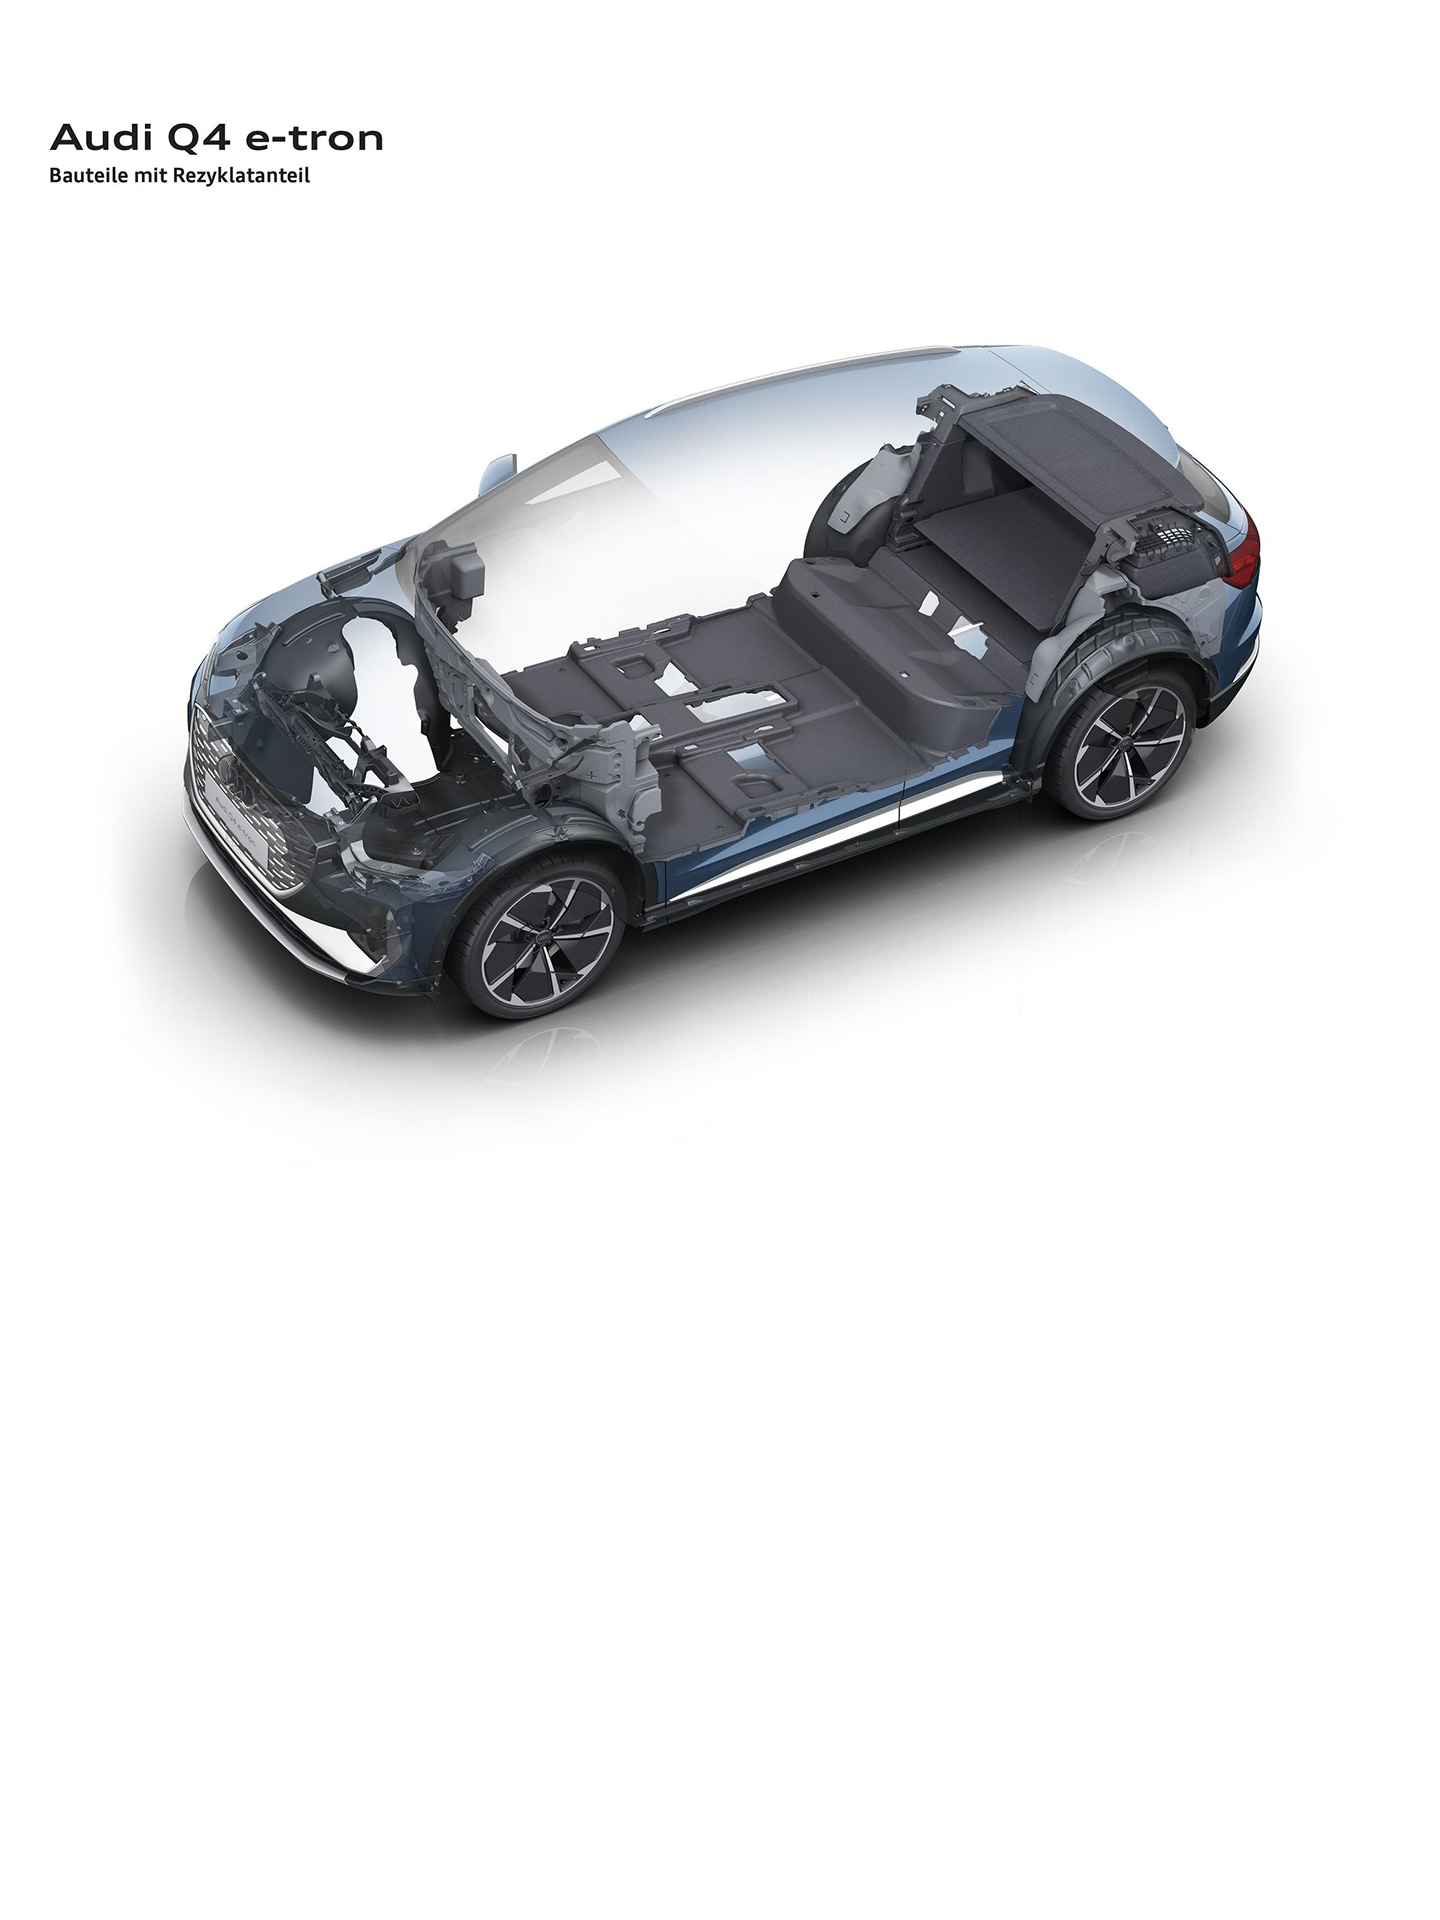 Geri dönüştürülmüş bileşenlere genel bakış Audi Q4 e-tron